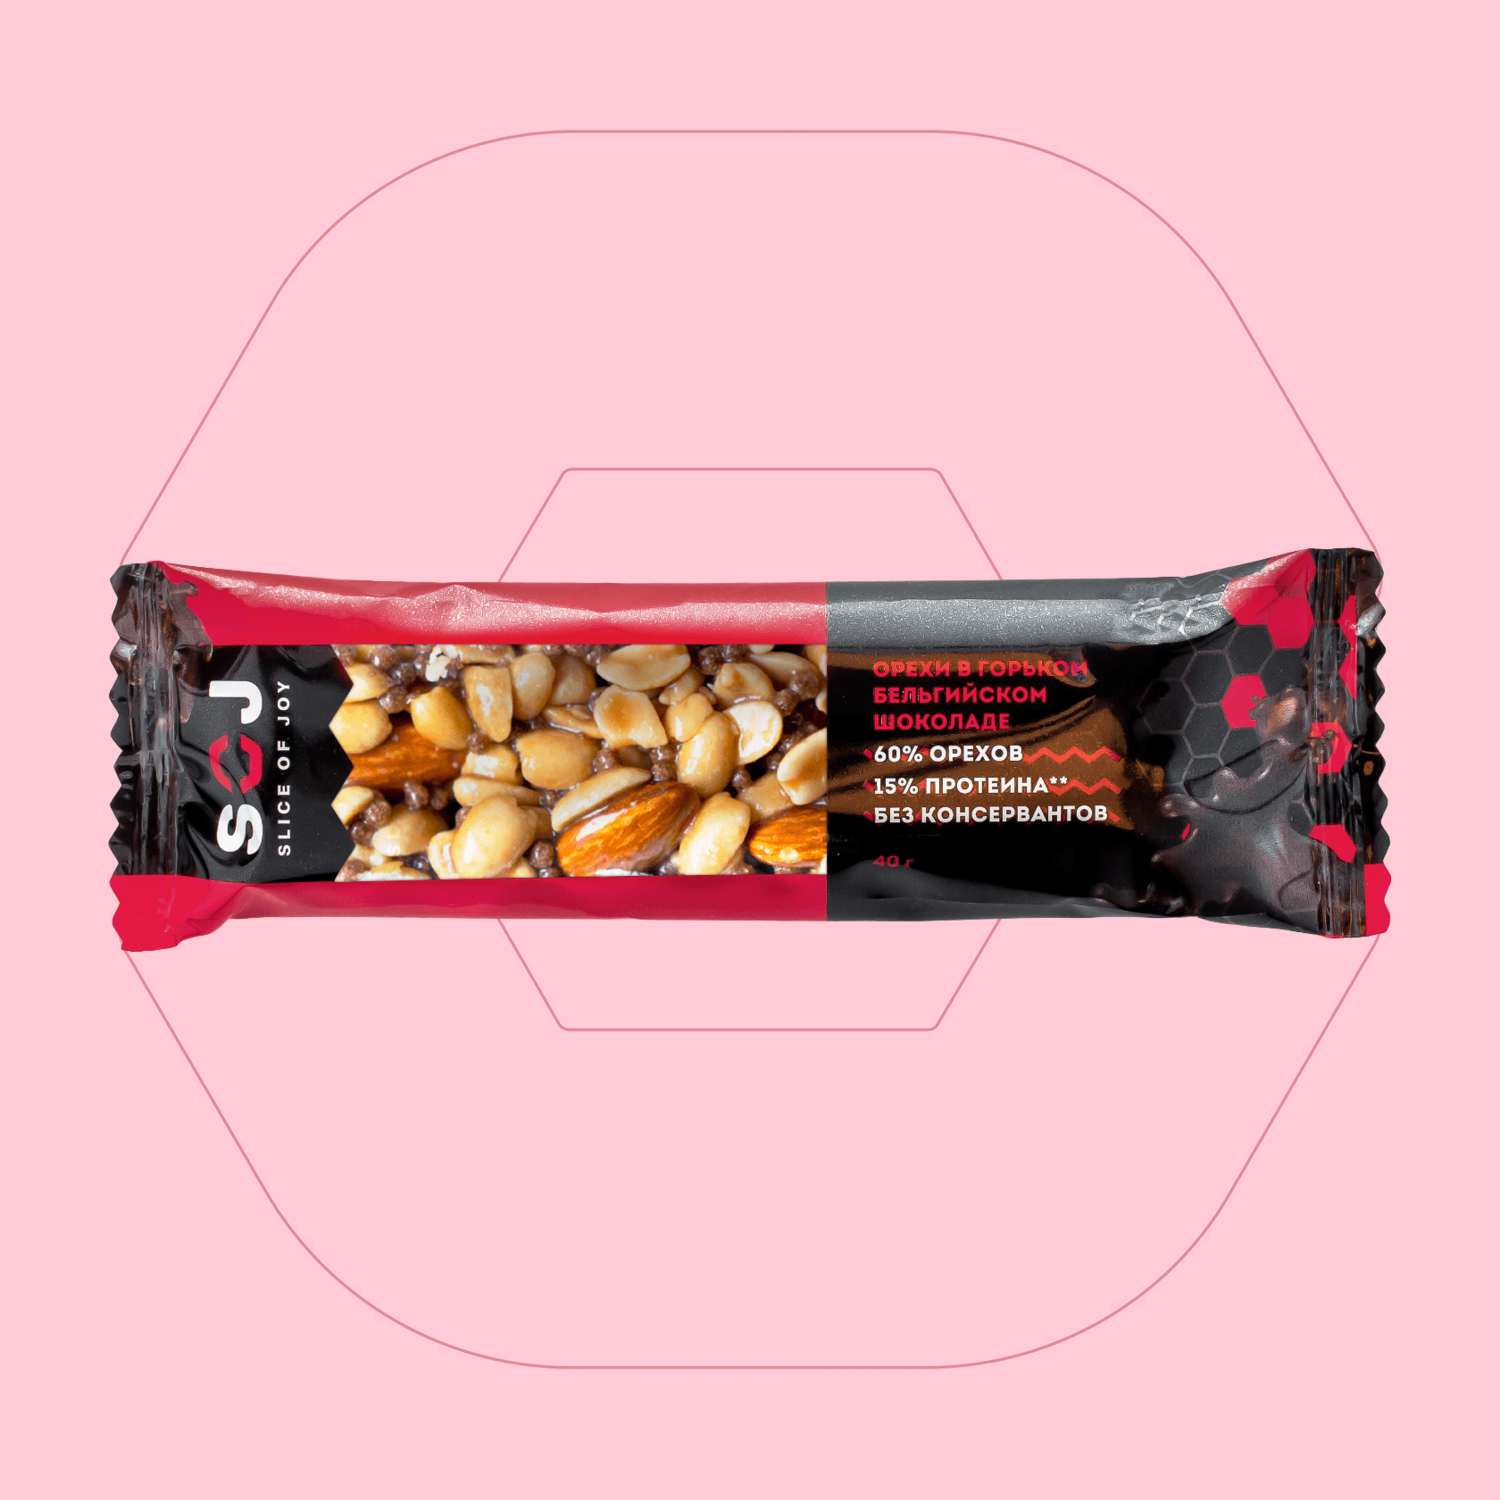 Ореховый батончик со вкусом Айриш-Крим «Арахис-миндаль-горький бельгийский шоколад»